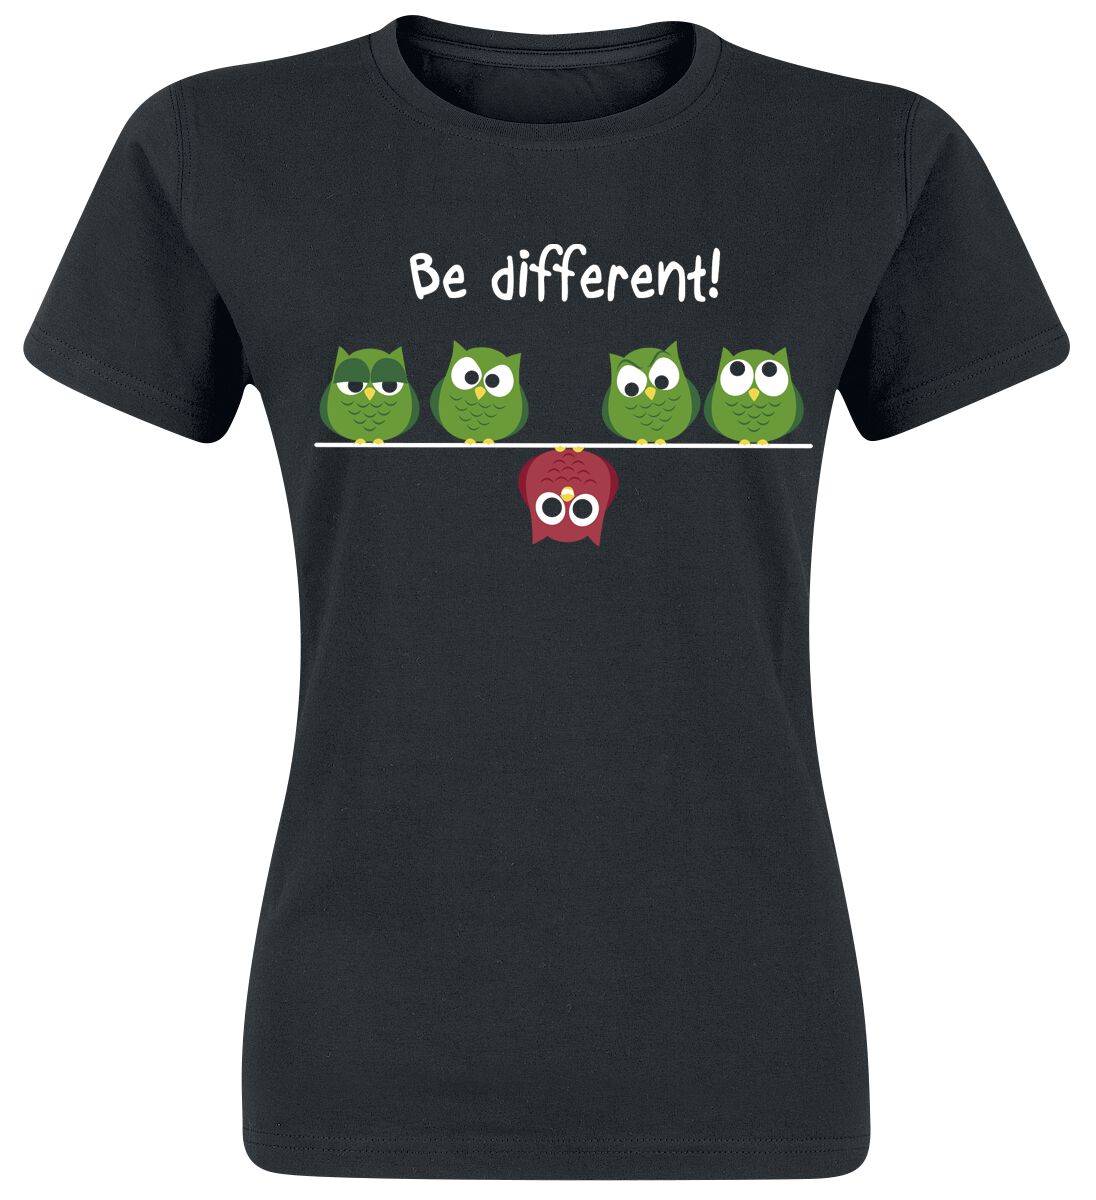 T-Shirt Manches courtes Fun de Be Different! - - XS à 3XL - pour Femme - noir